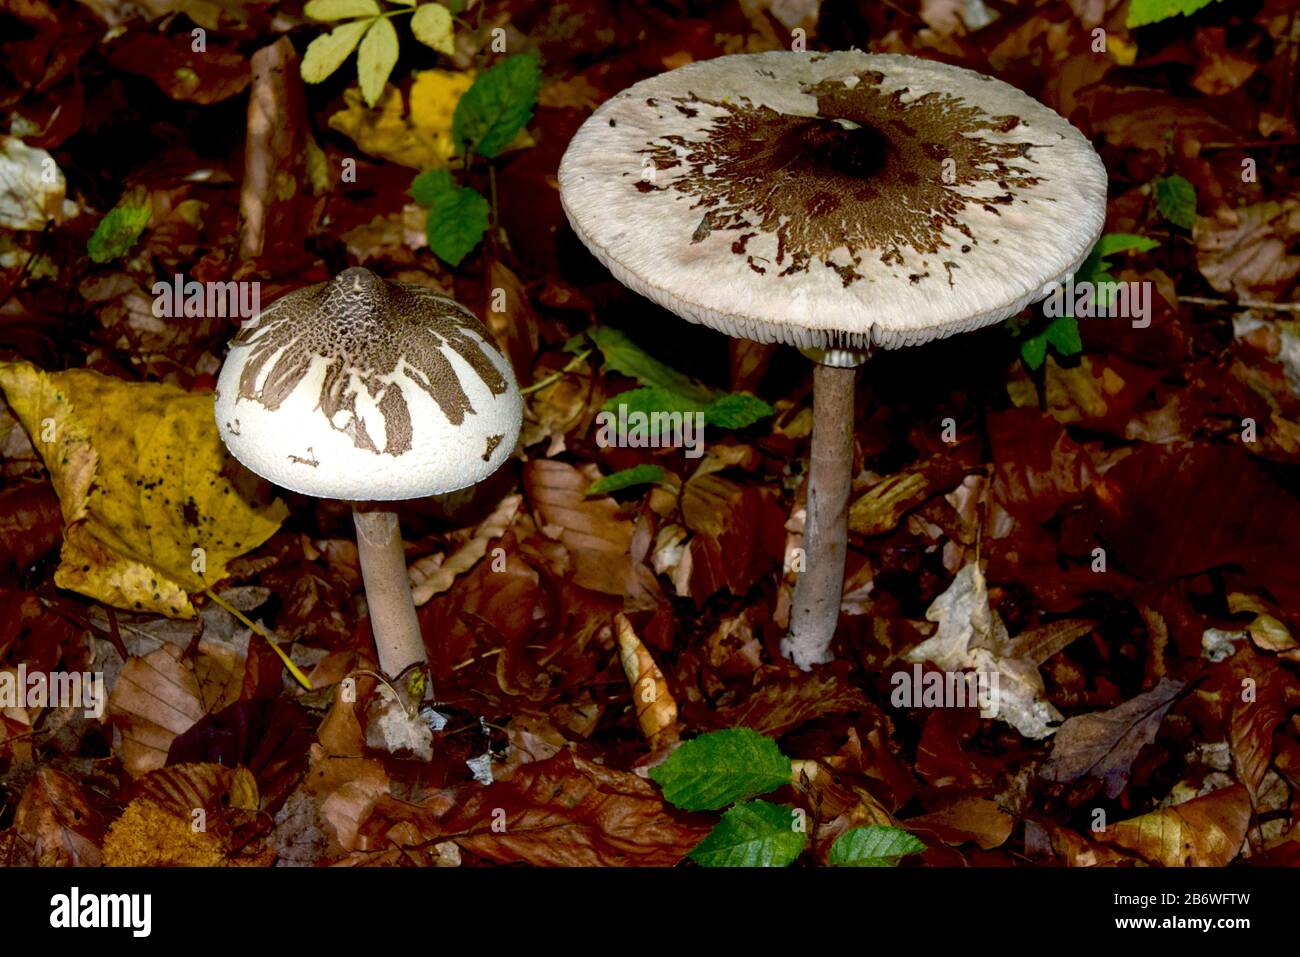 Parasol delgado (Macrolepiota mastoidea). Dos hongos de diferentes edades. Alemania Foto de stock